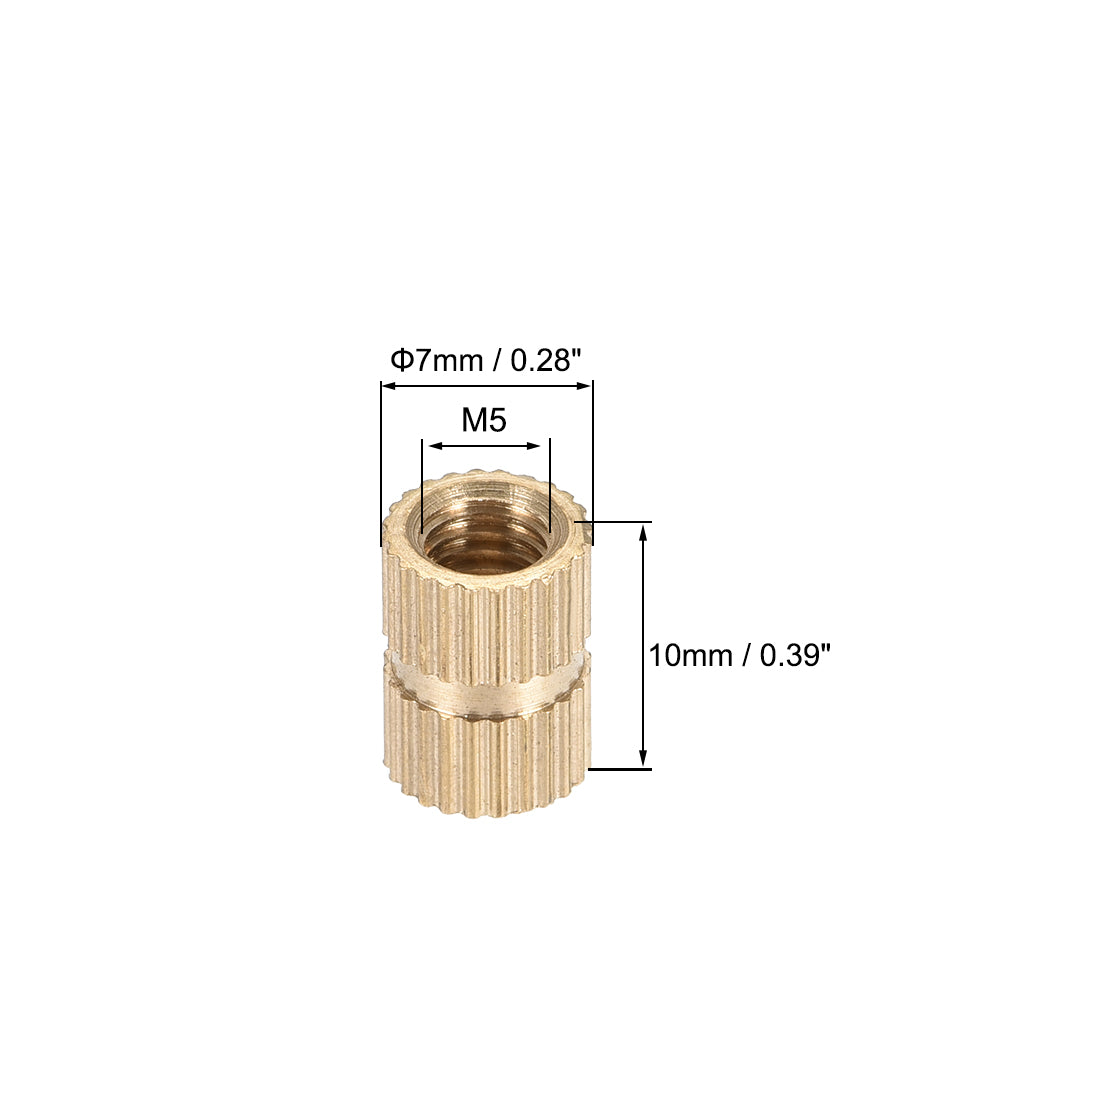 uxcell Uxcell Knurled Insert Nuts, M5 x 10mm(L) x 7mm(OD) Female Thread Brass Embedment Assortment Kit, 50 Pcs